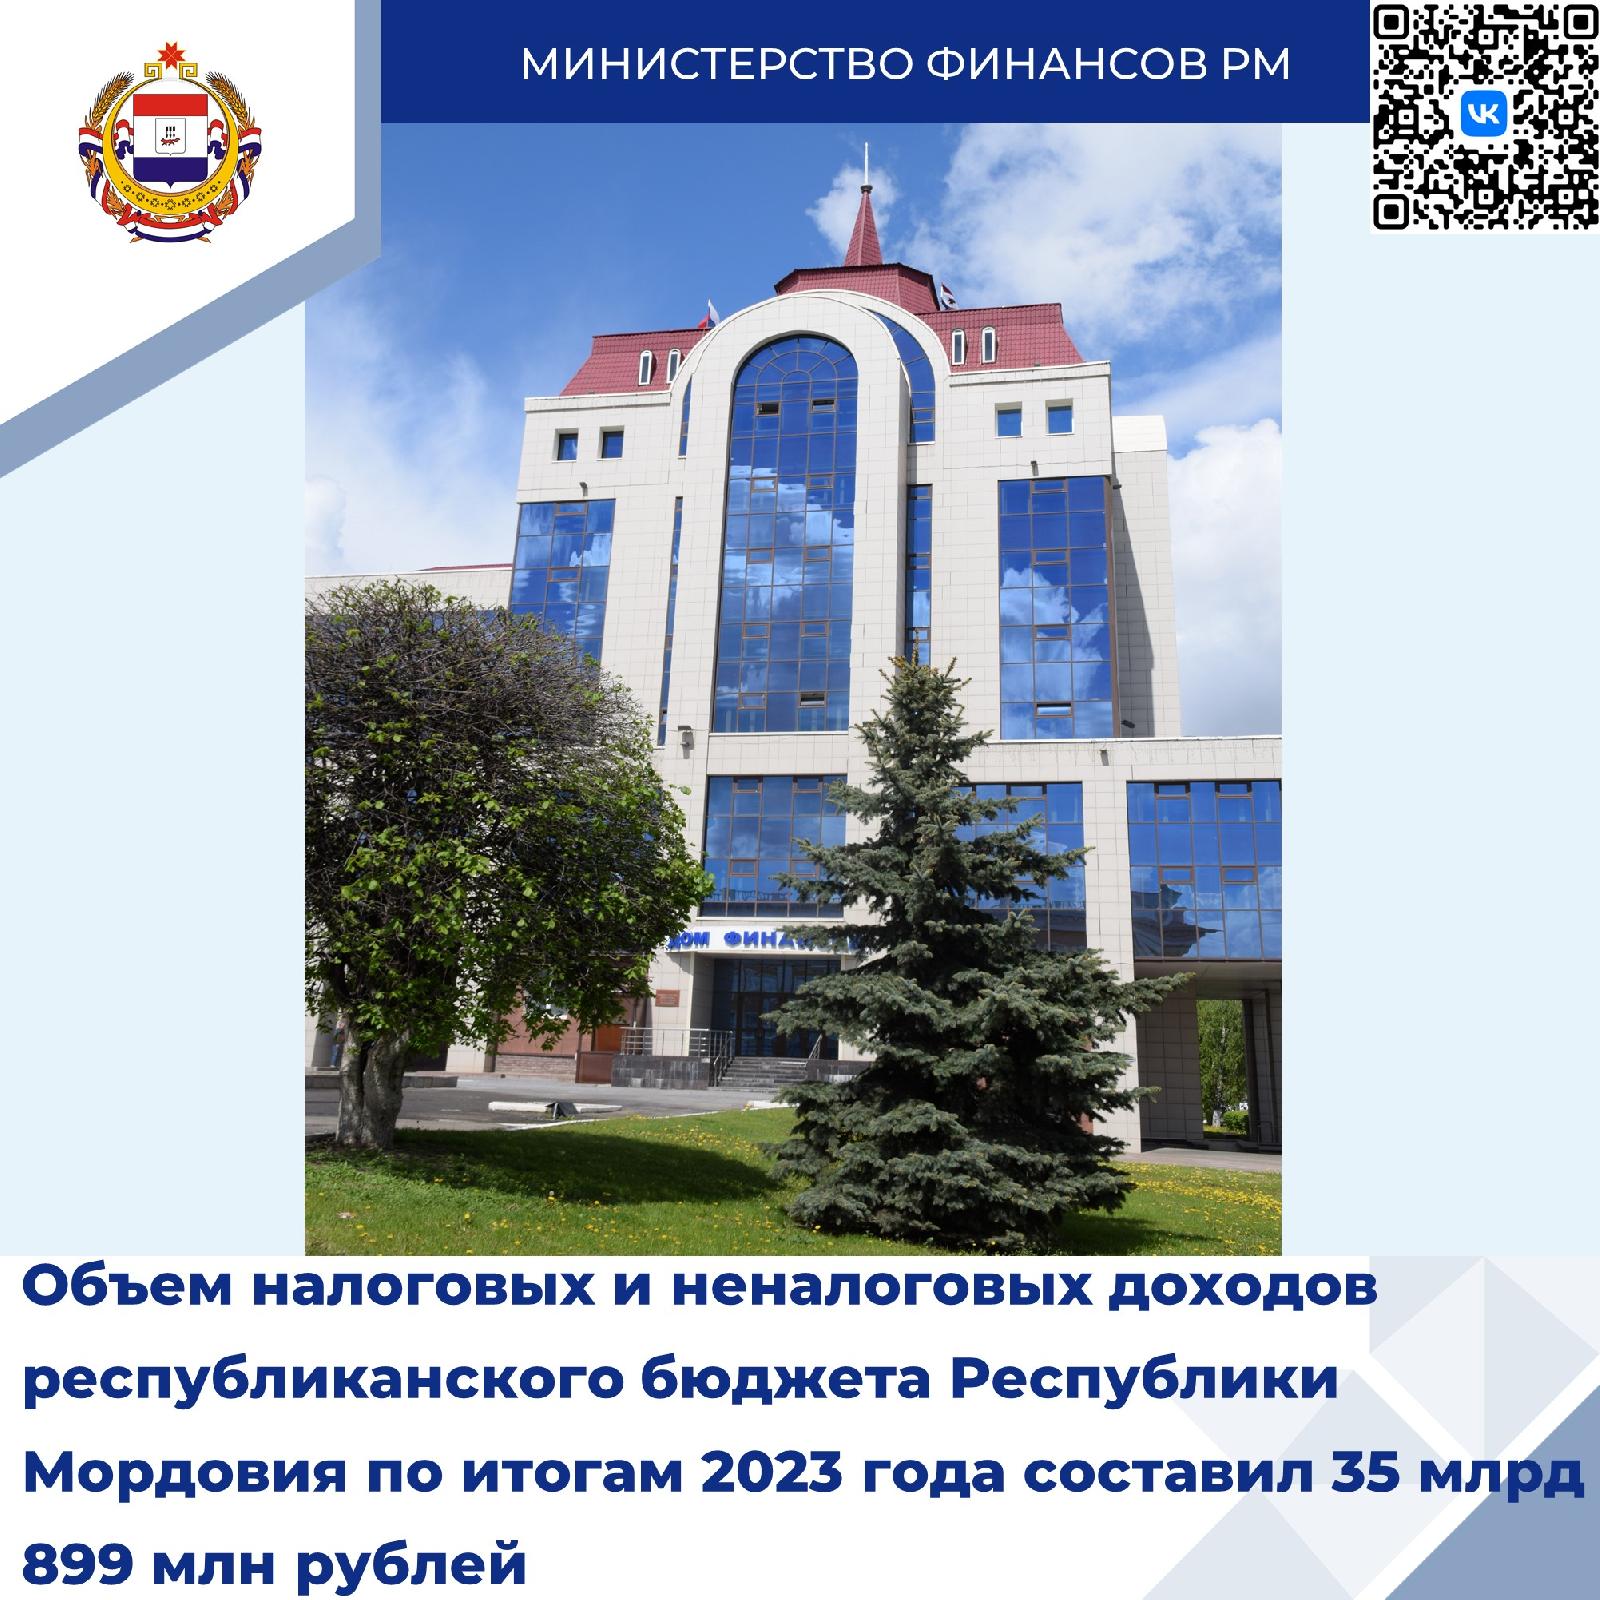 Объем налоговых и неналоговых доходов республиканского бюджета Республики Мордовия по итогам 2023 года составил 35 899 млн. рублей